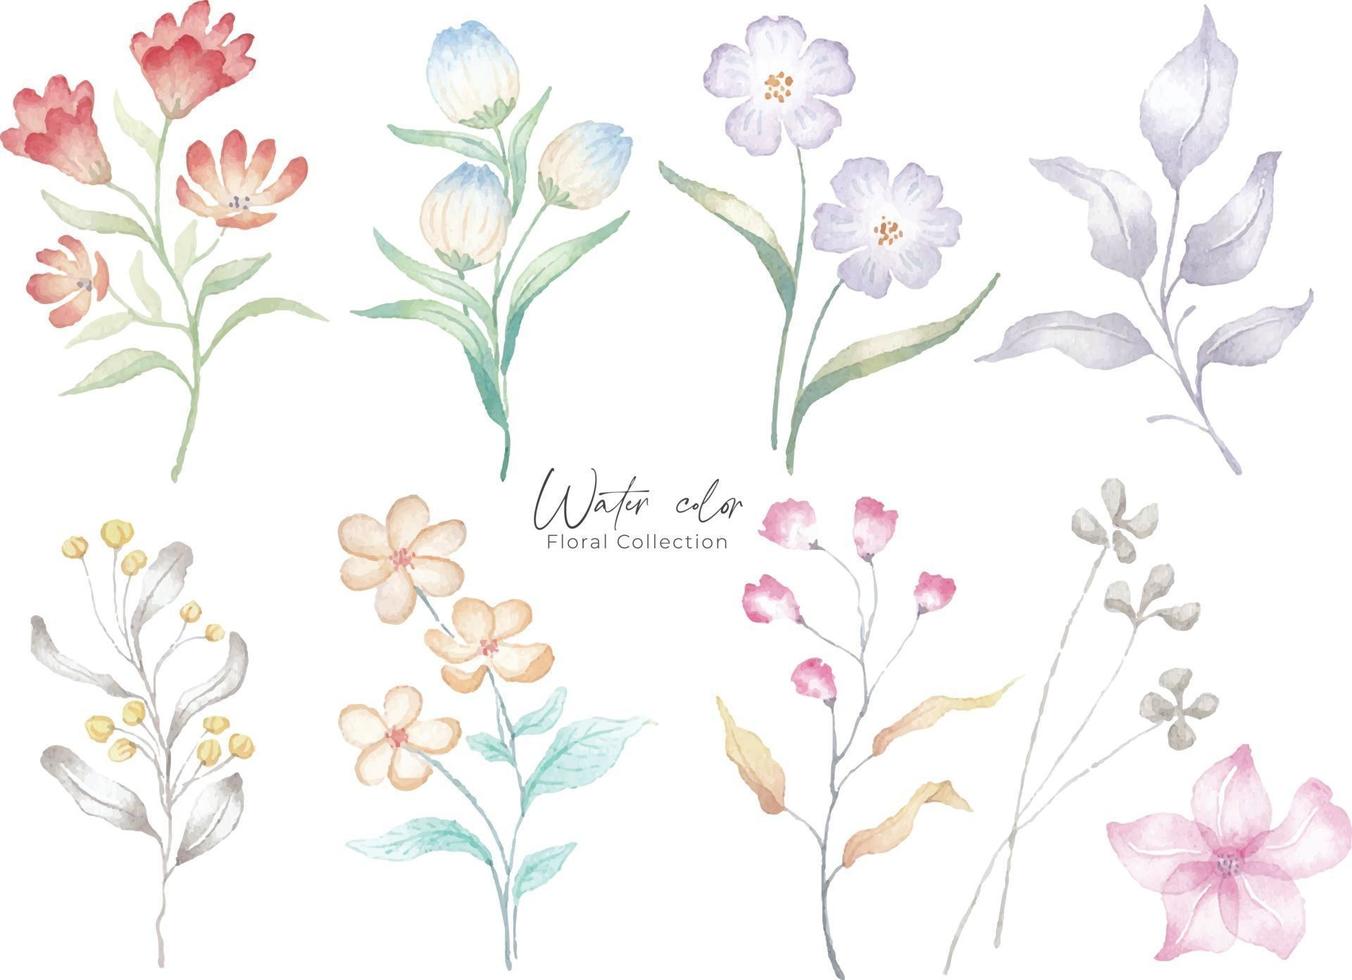 Watercolor flower background illustration. Botanical Floral set vector